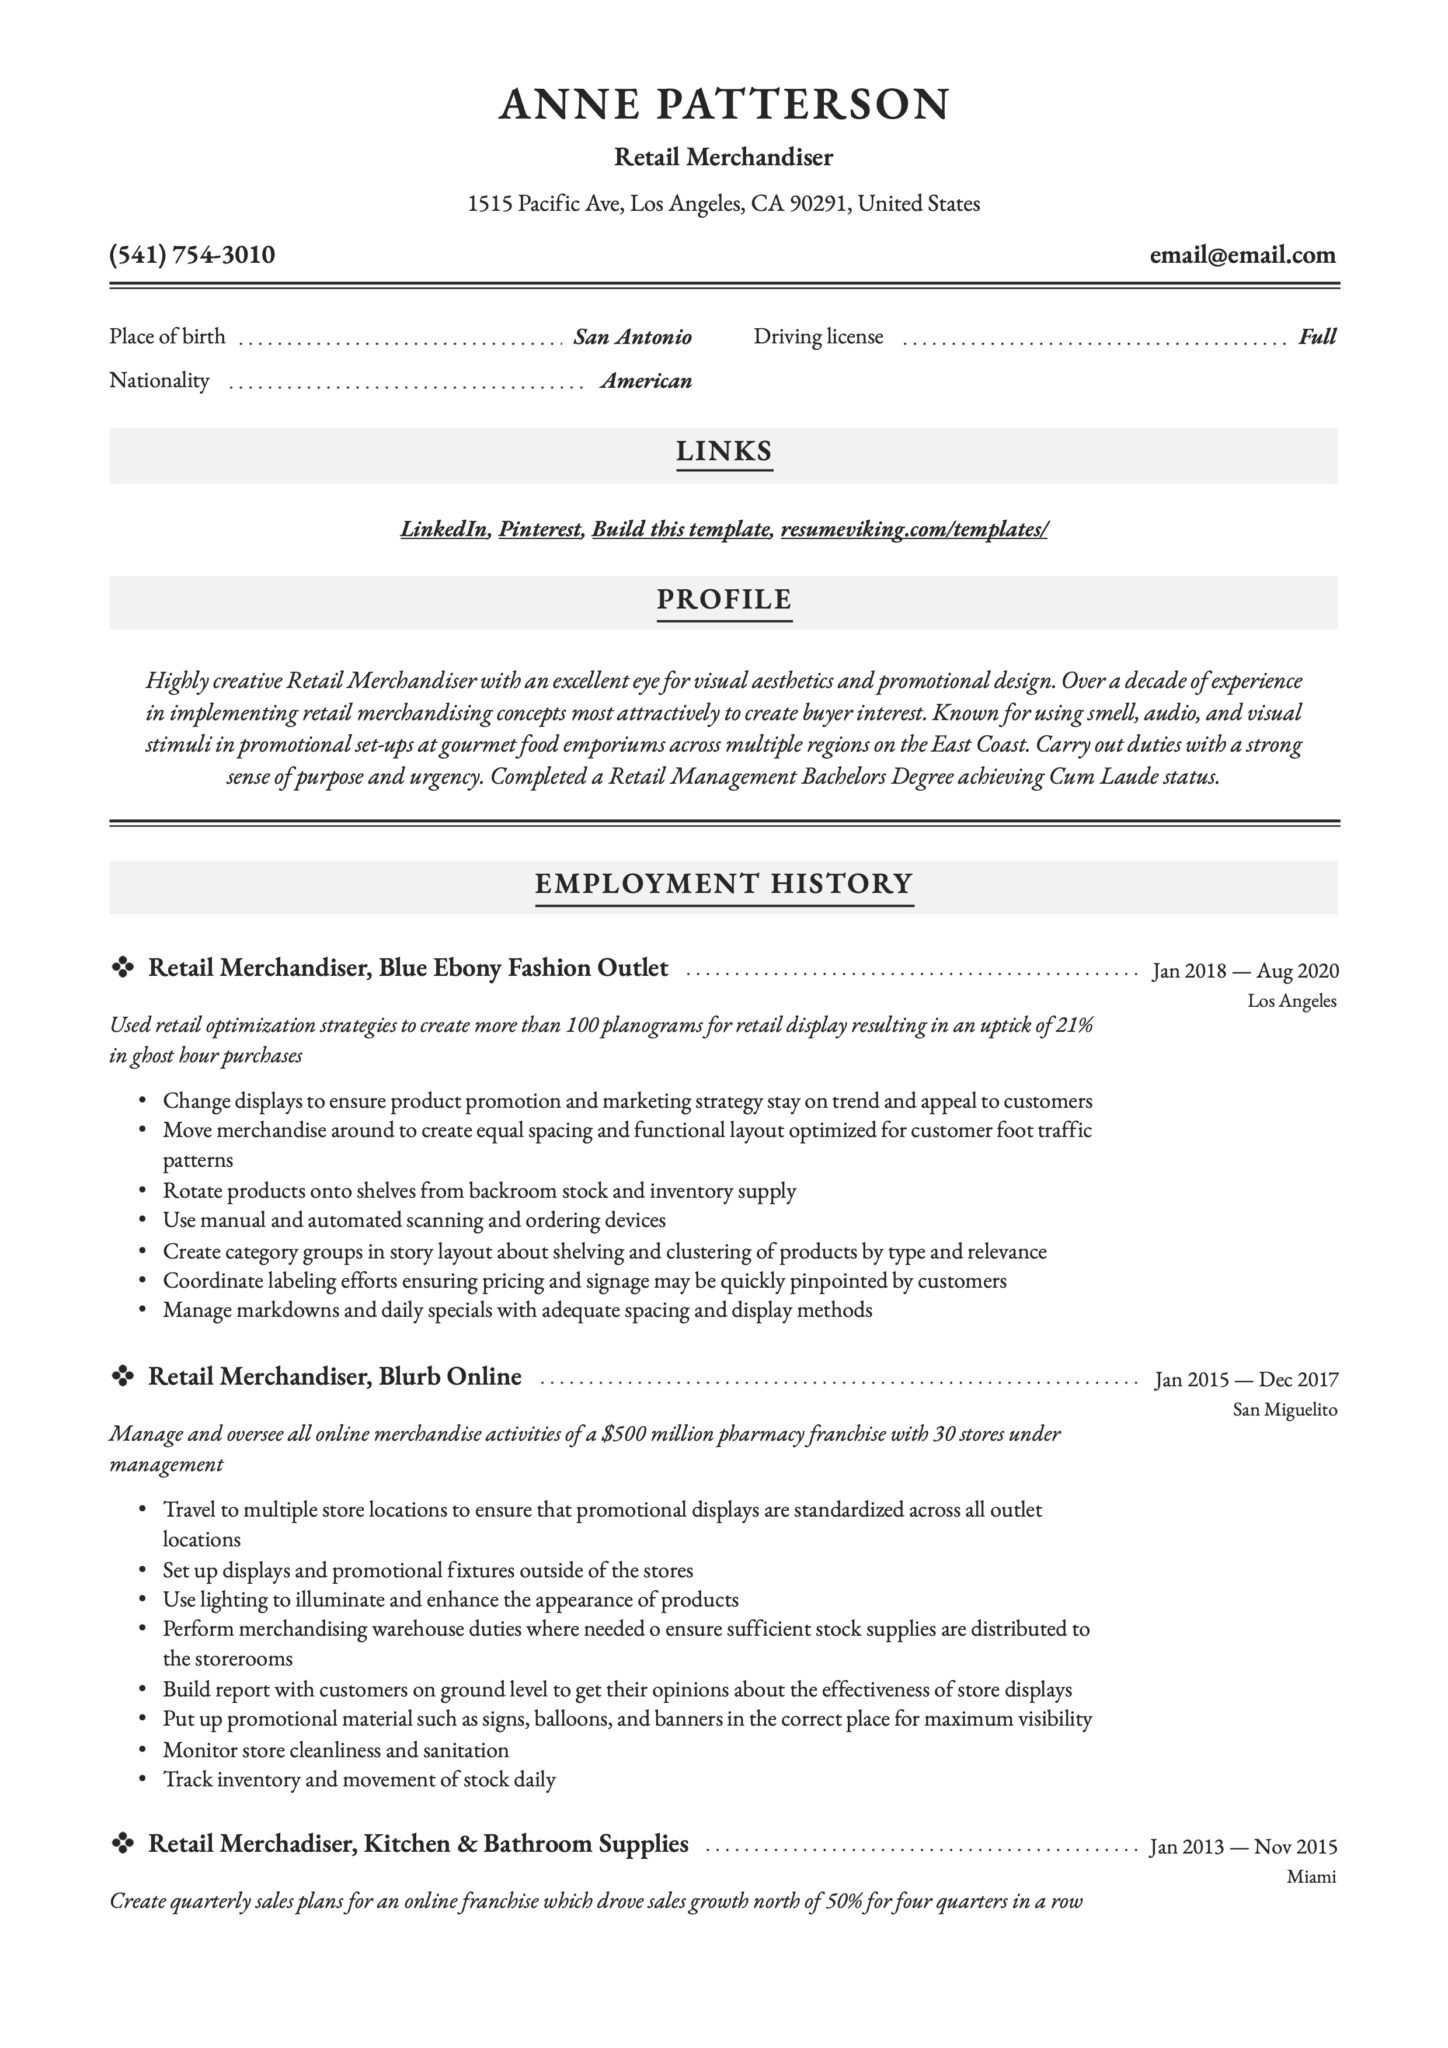 Sample Resume for Merchandiser Job Description Retail Merchandiser Resume & Writing Guide